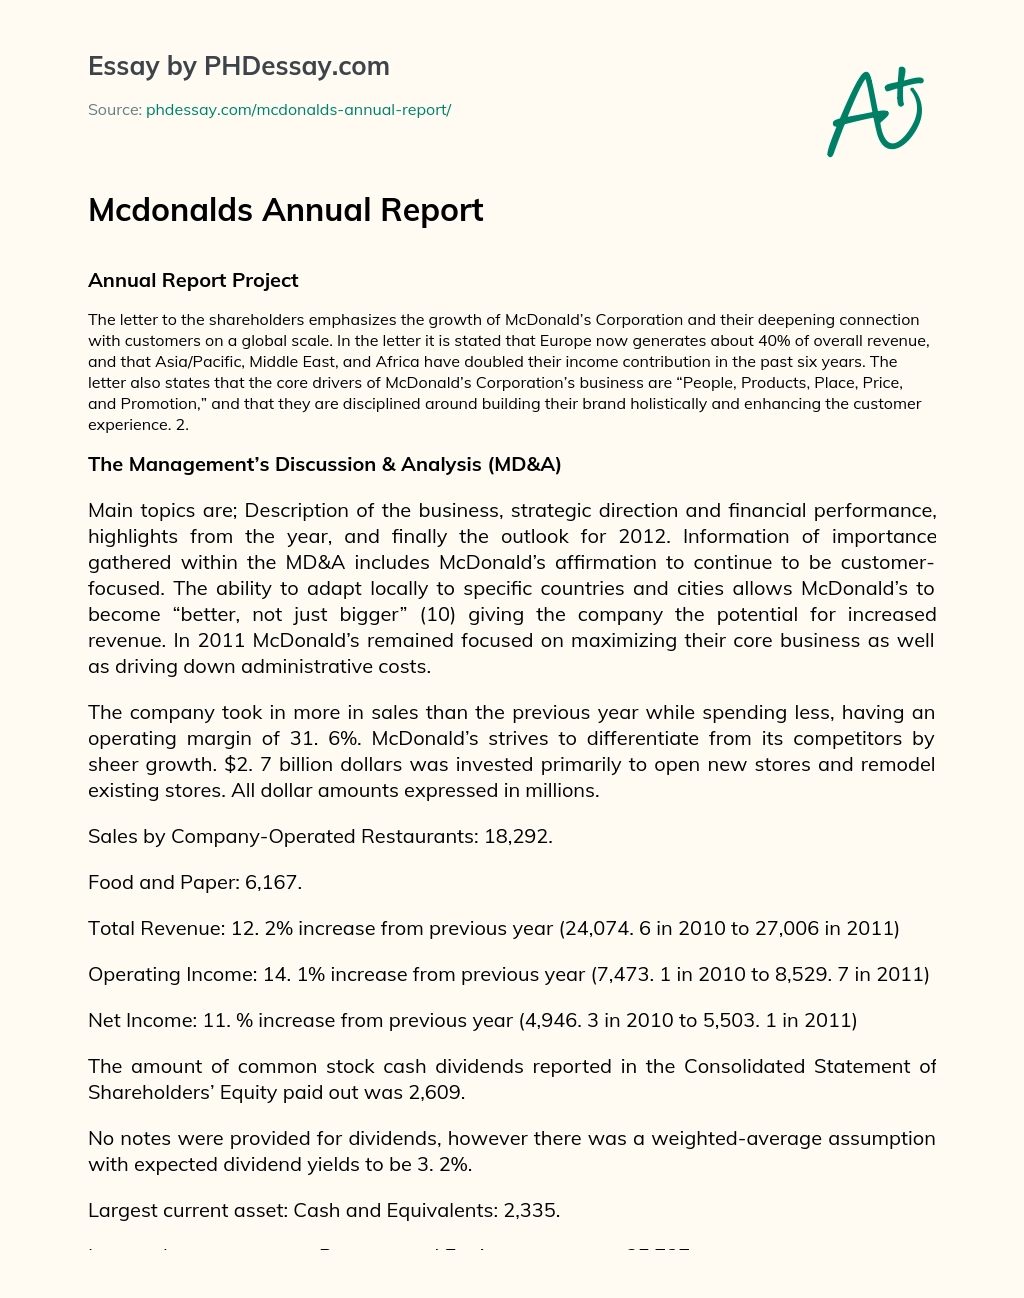 Mcdonalds Annual Report essay